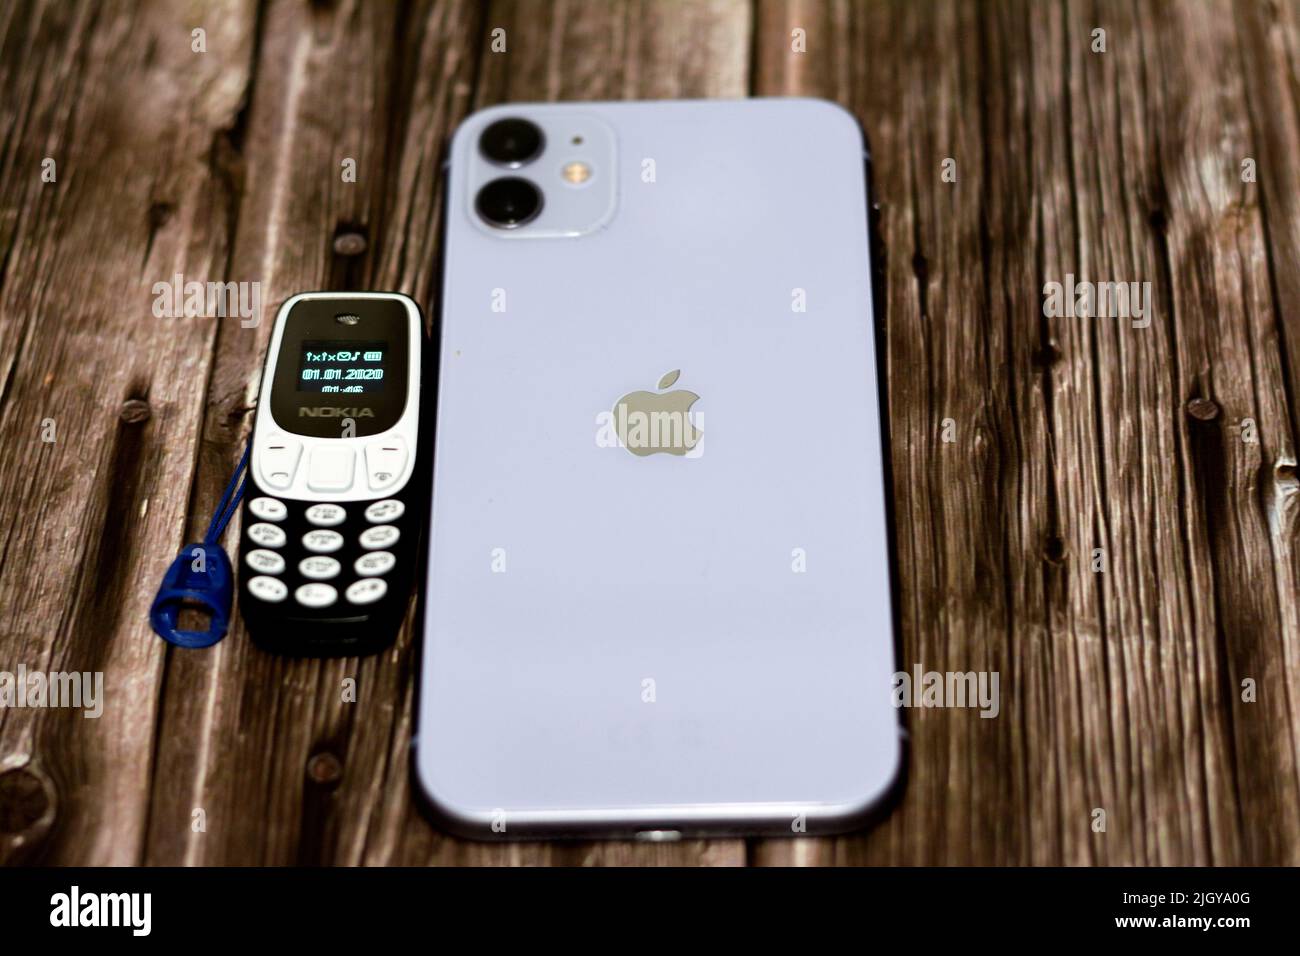 Cairo, Egitto, 11 2022 giugno: Apple iPhone 11 con 6,1inch Liquid Retina HD display ad alta definizione e un piccolo piccolo vecchio telefono cellulare Nokia mini con un KE Foto Stock